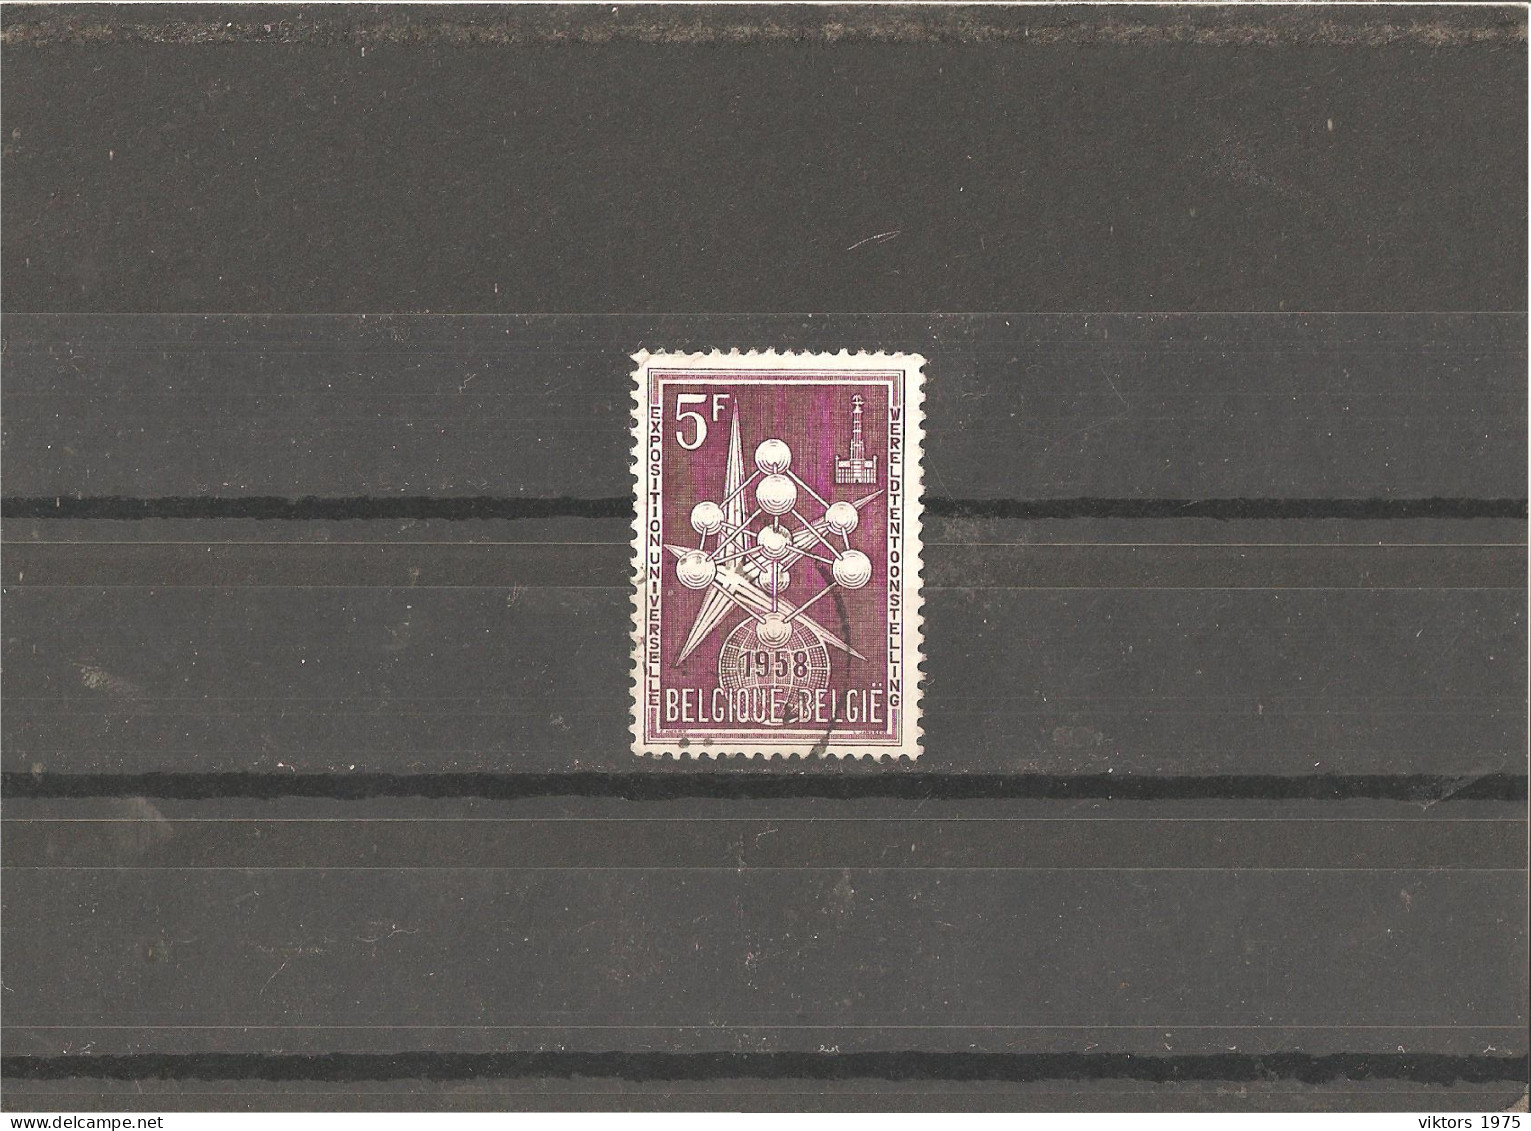 Used Stamp Nr.1092 In MICHEL Catalog - Usati